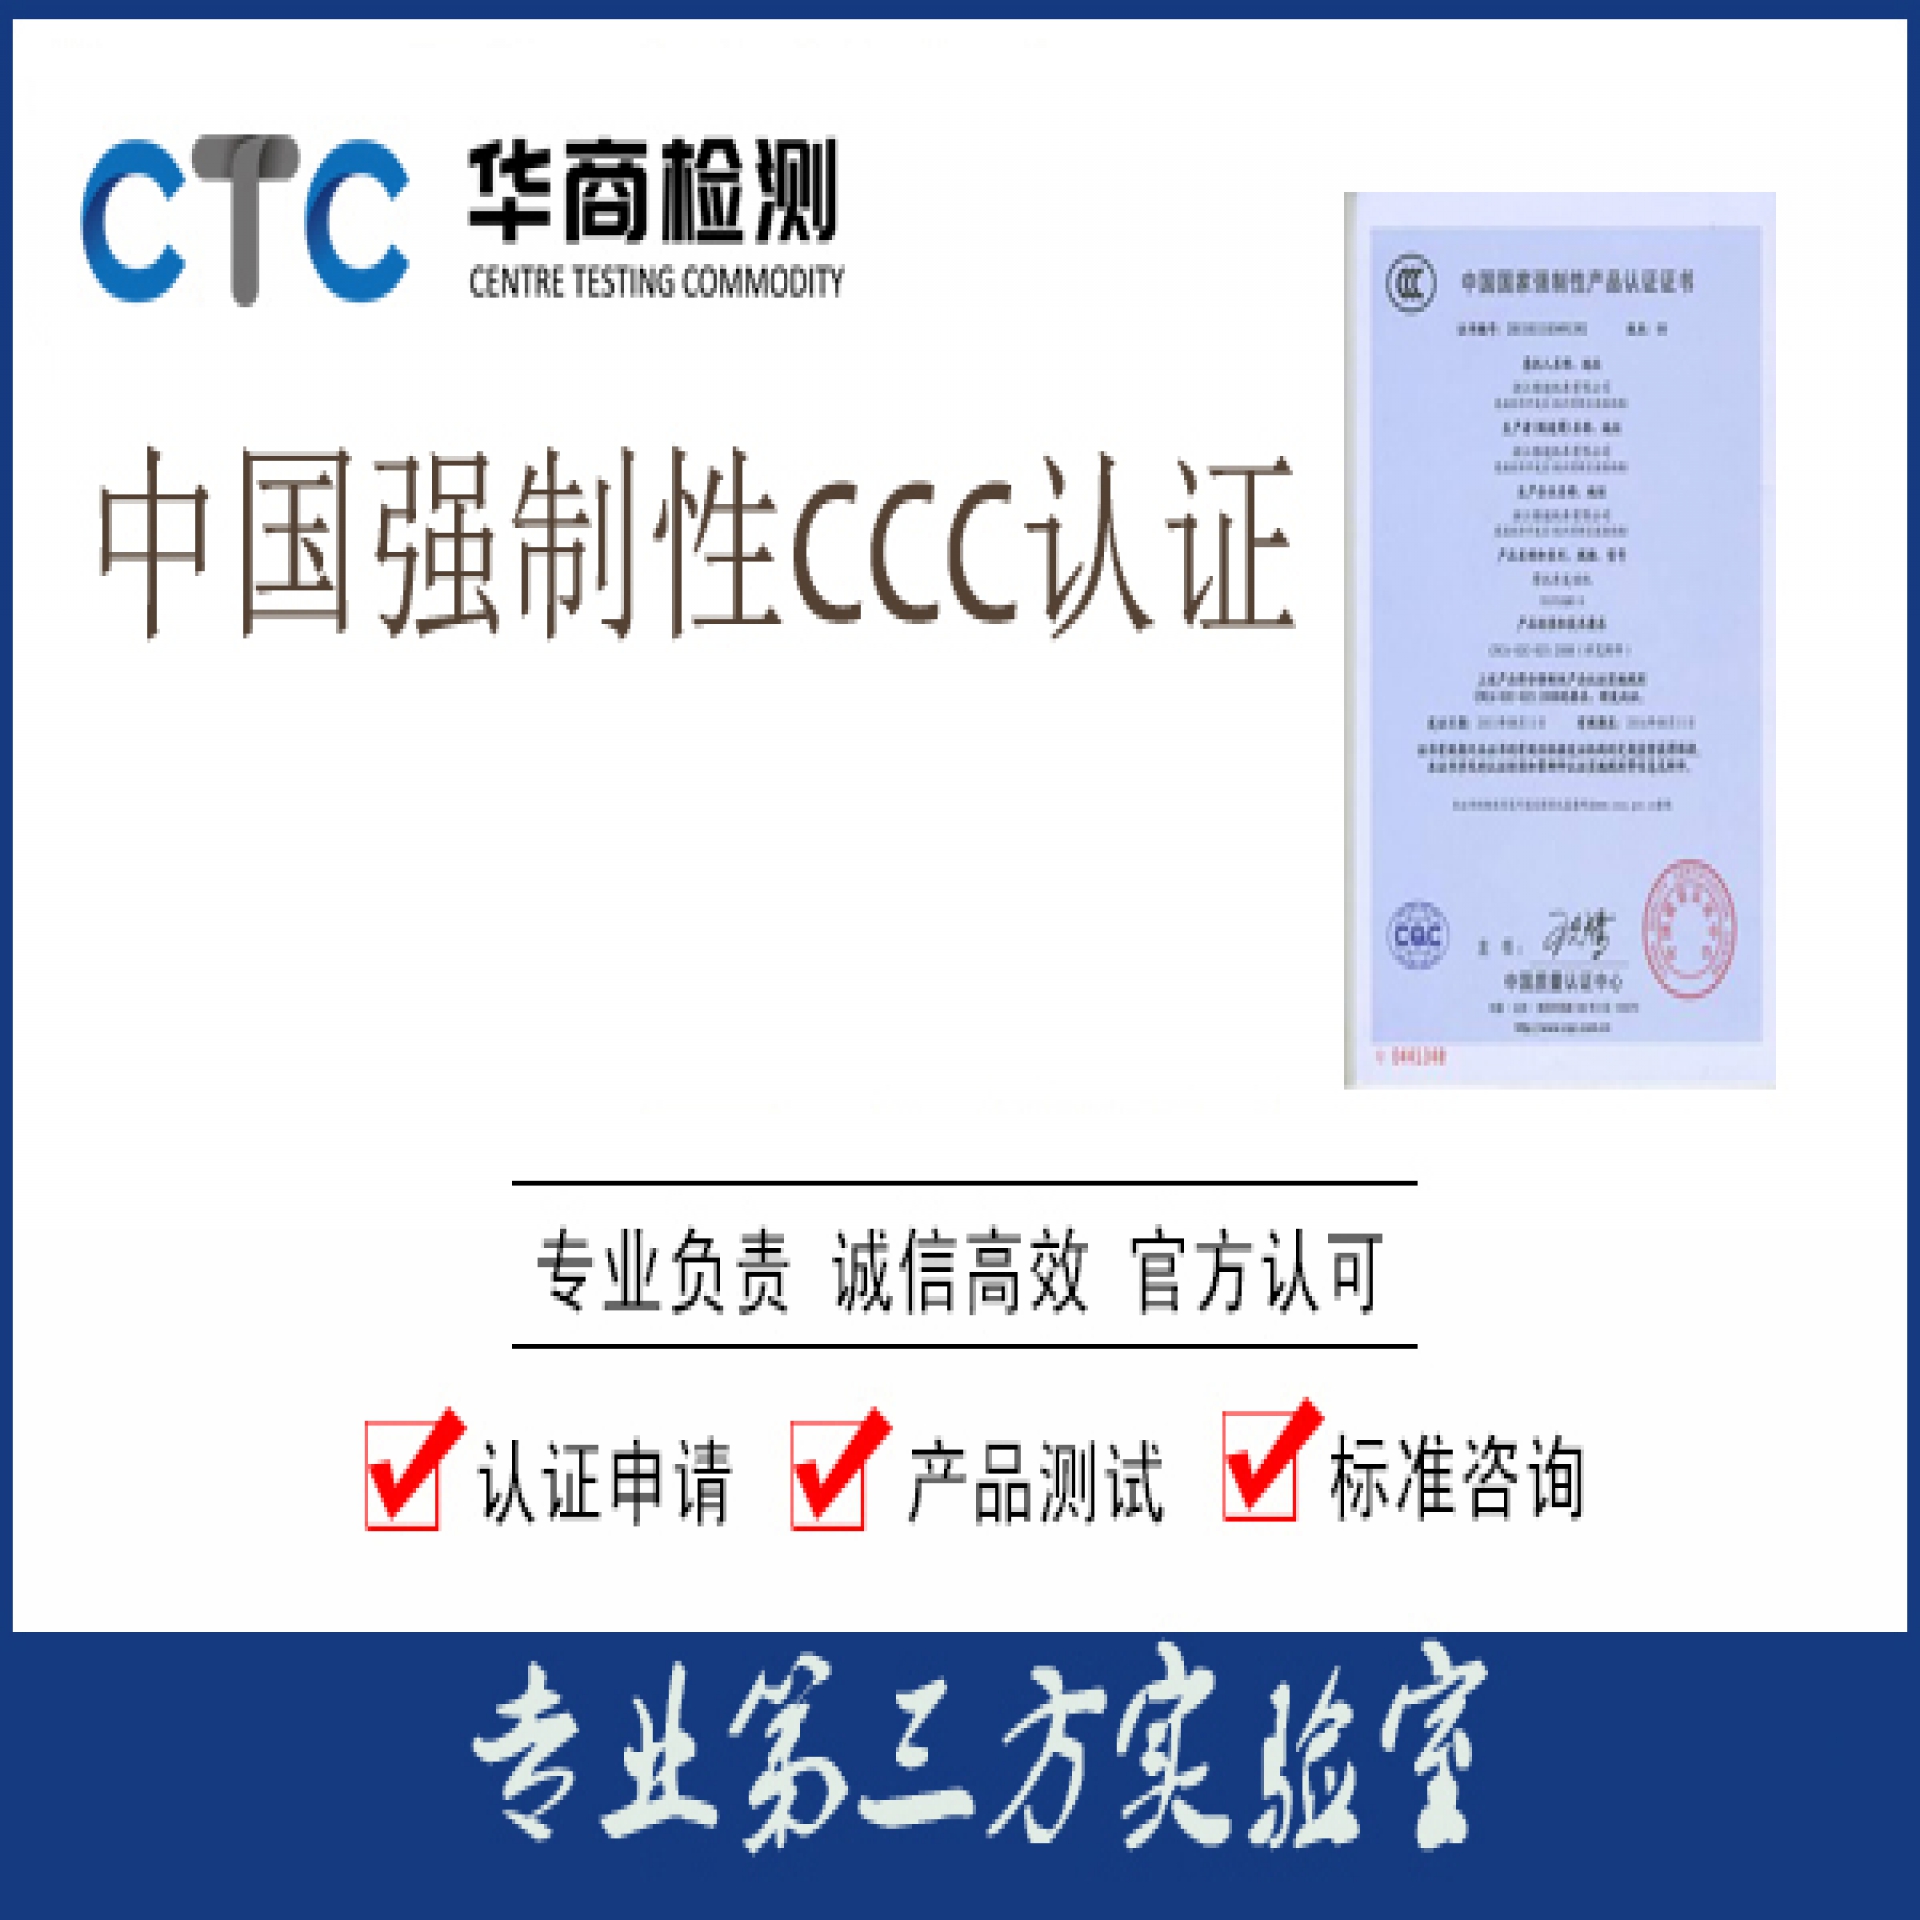 CCC认证有什么作用呢?